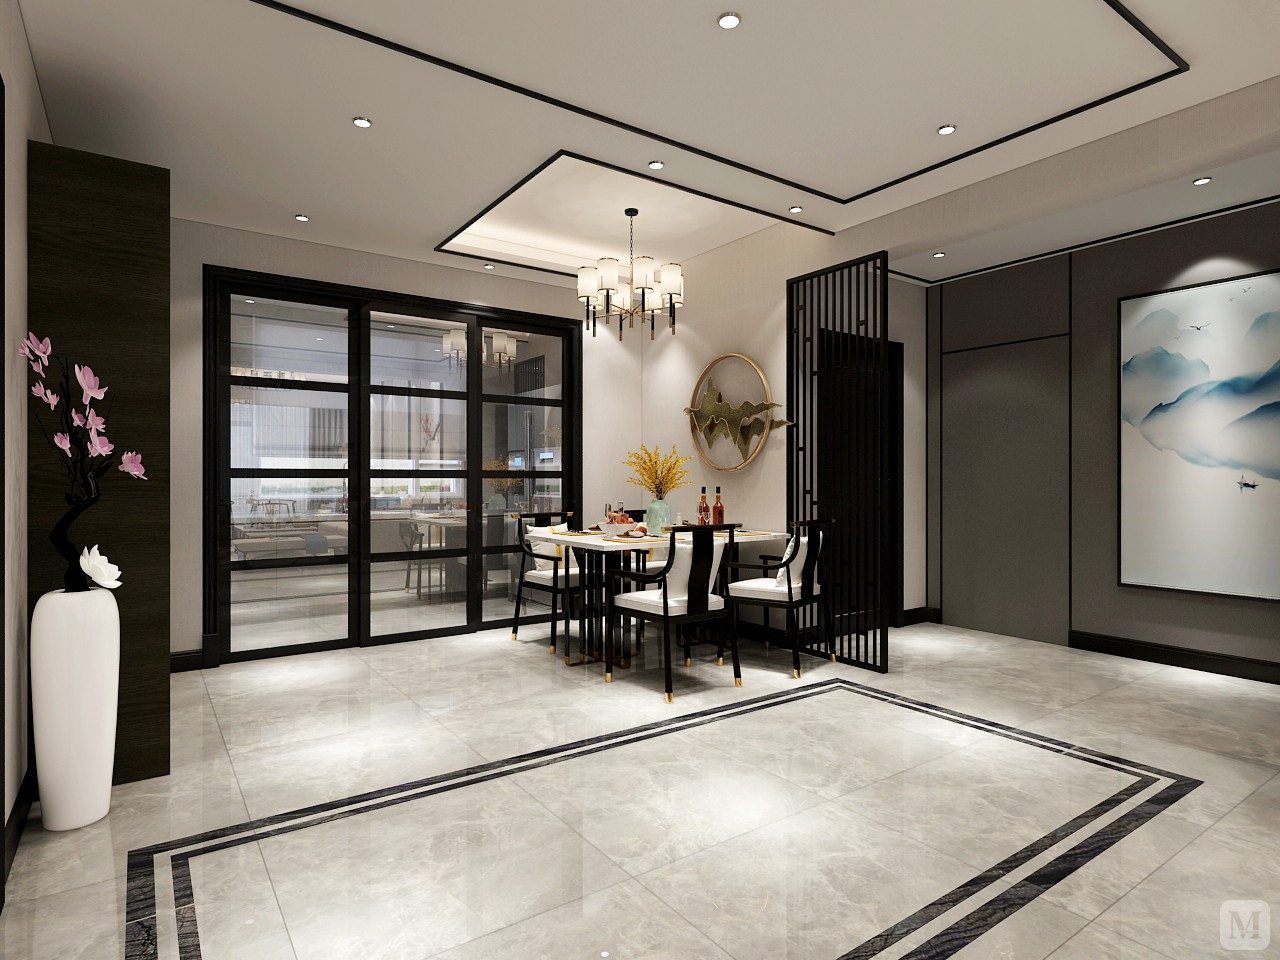 应业主要求，设计出一套现代中式风格的设计案例。以黑白灰现代装饰元素为基础，加入深色木线为搭配，最后结合新中式风格的家居软装搭配，形成一套较具中式风格的现代中式装修风格案例。